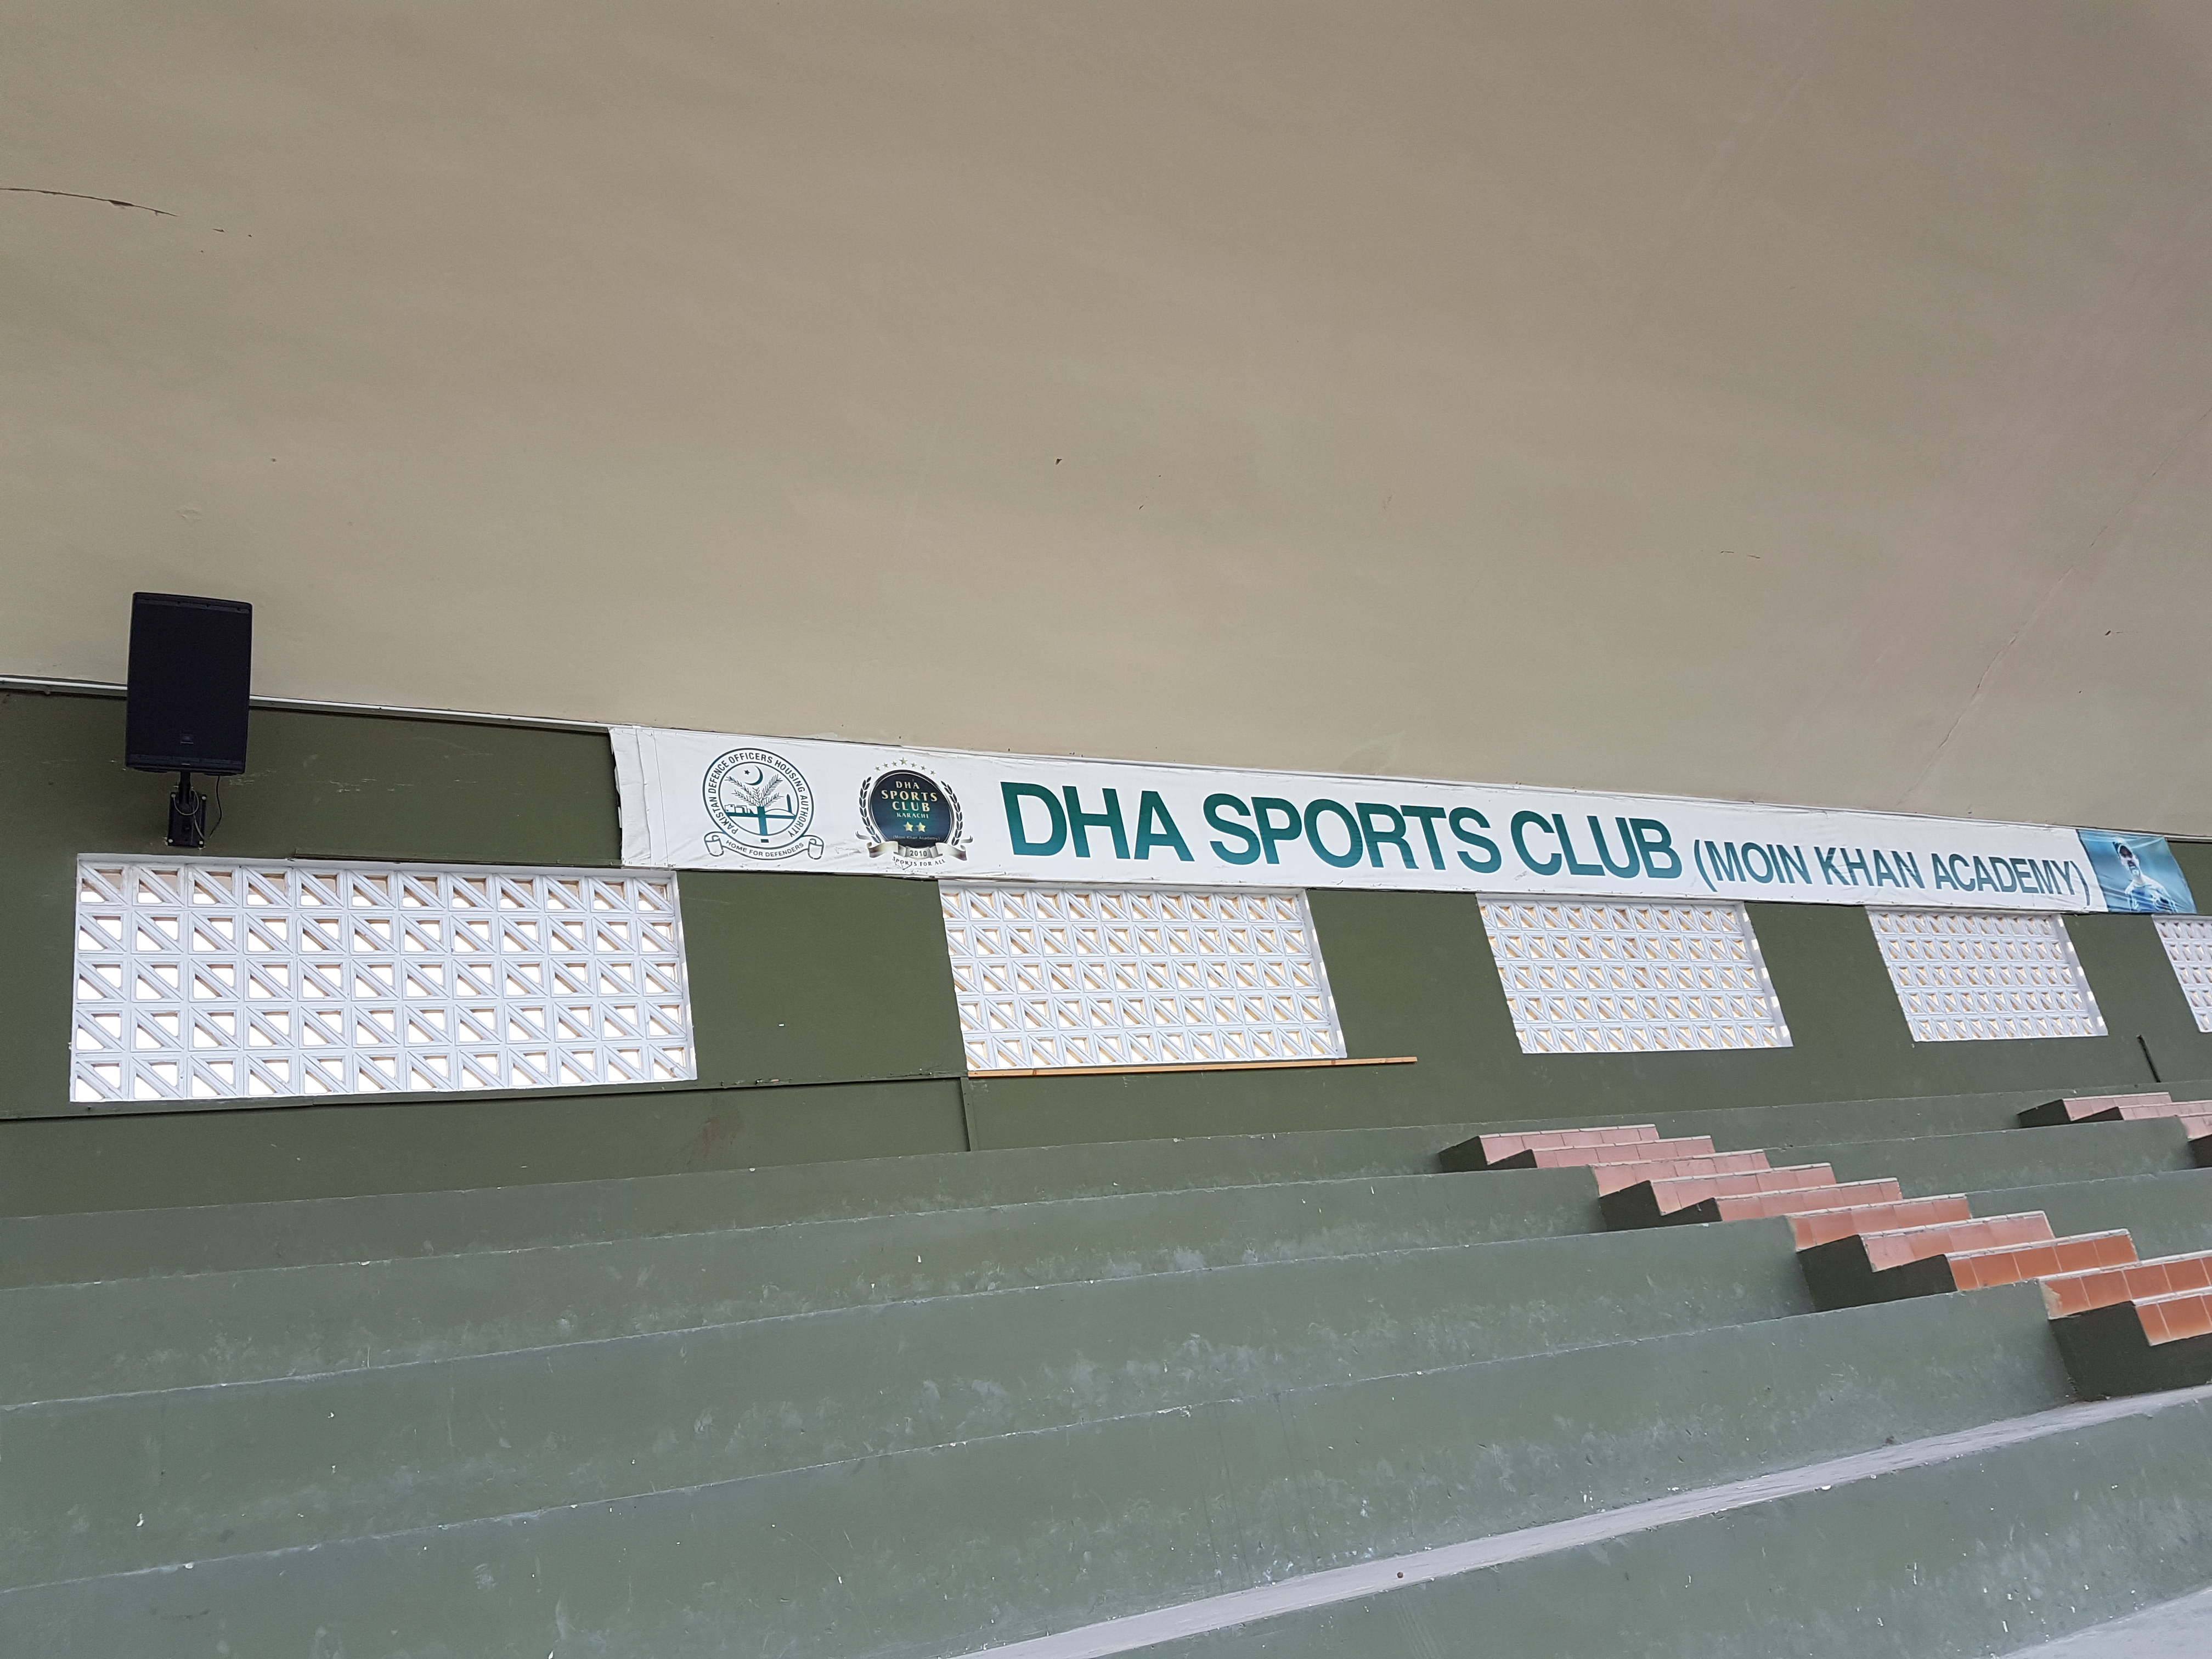 DHA 体育俱乐部使用 HARMAN 专业音视系统改造其体育场音响系统